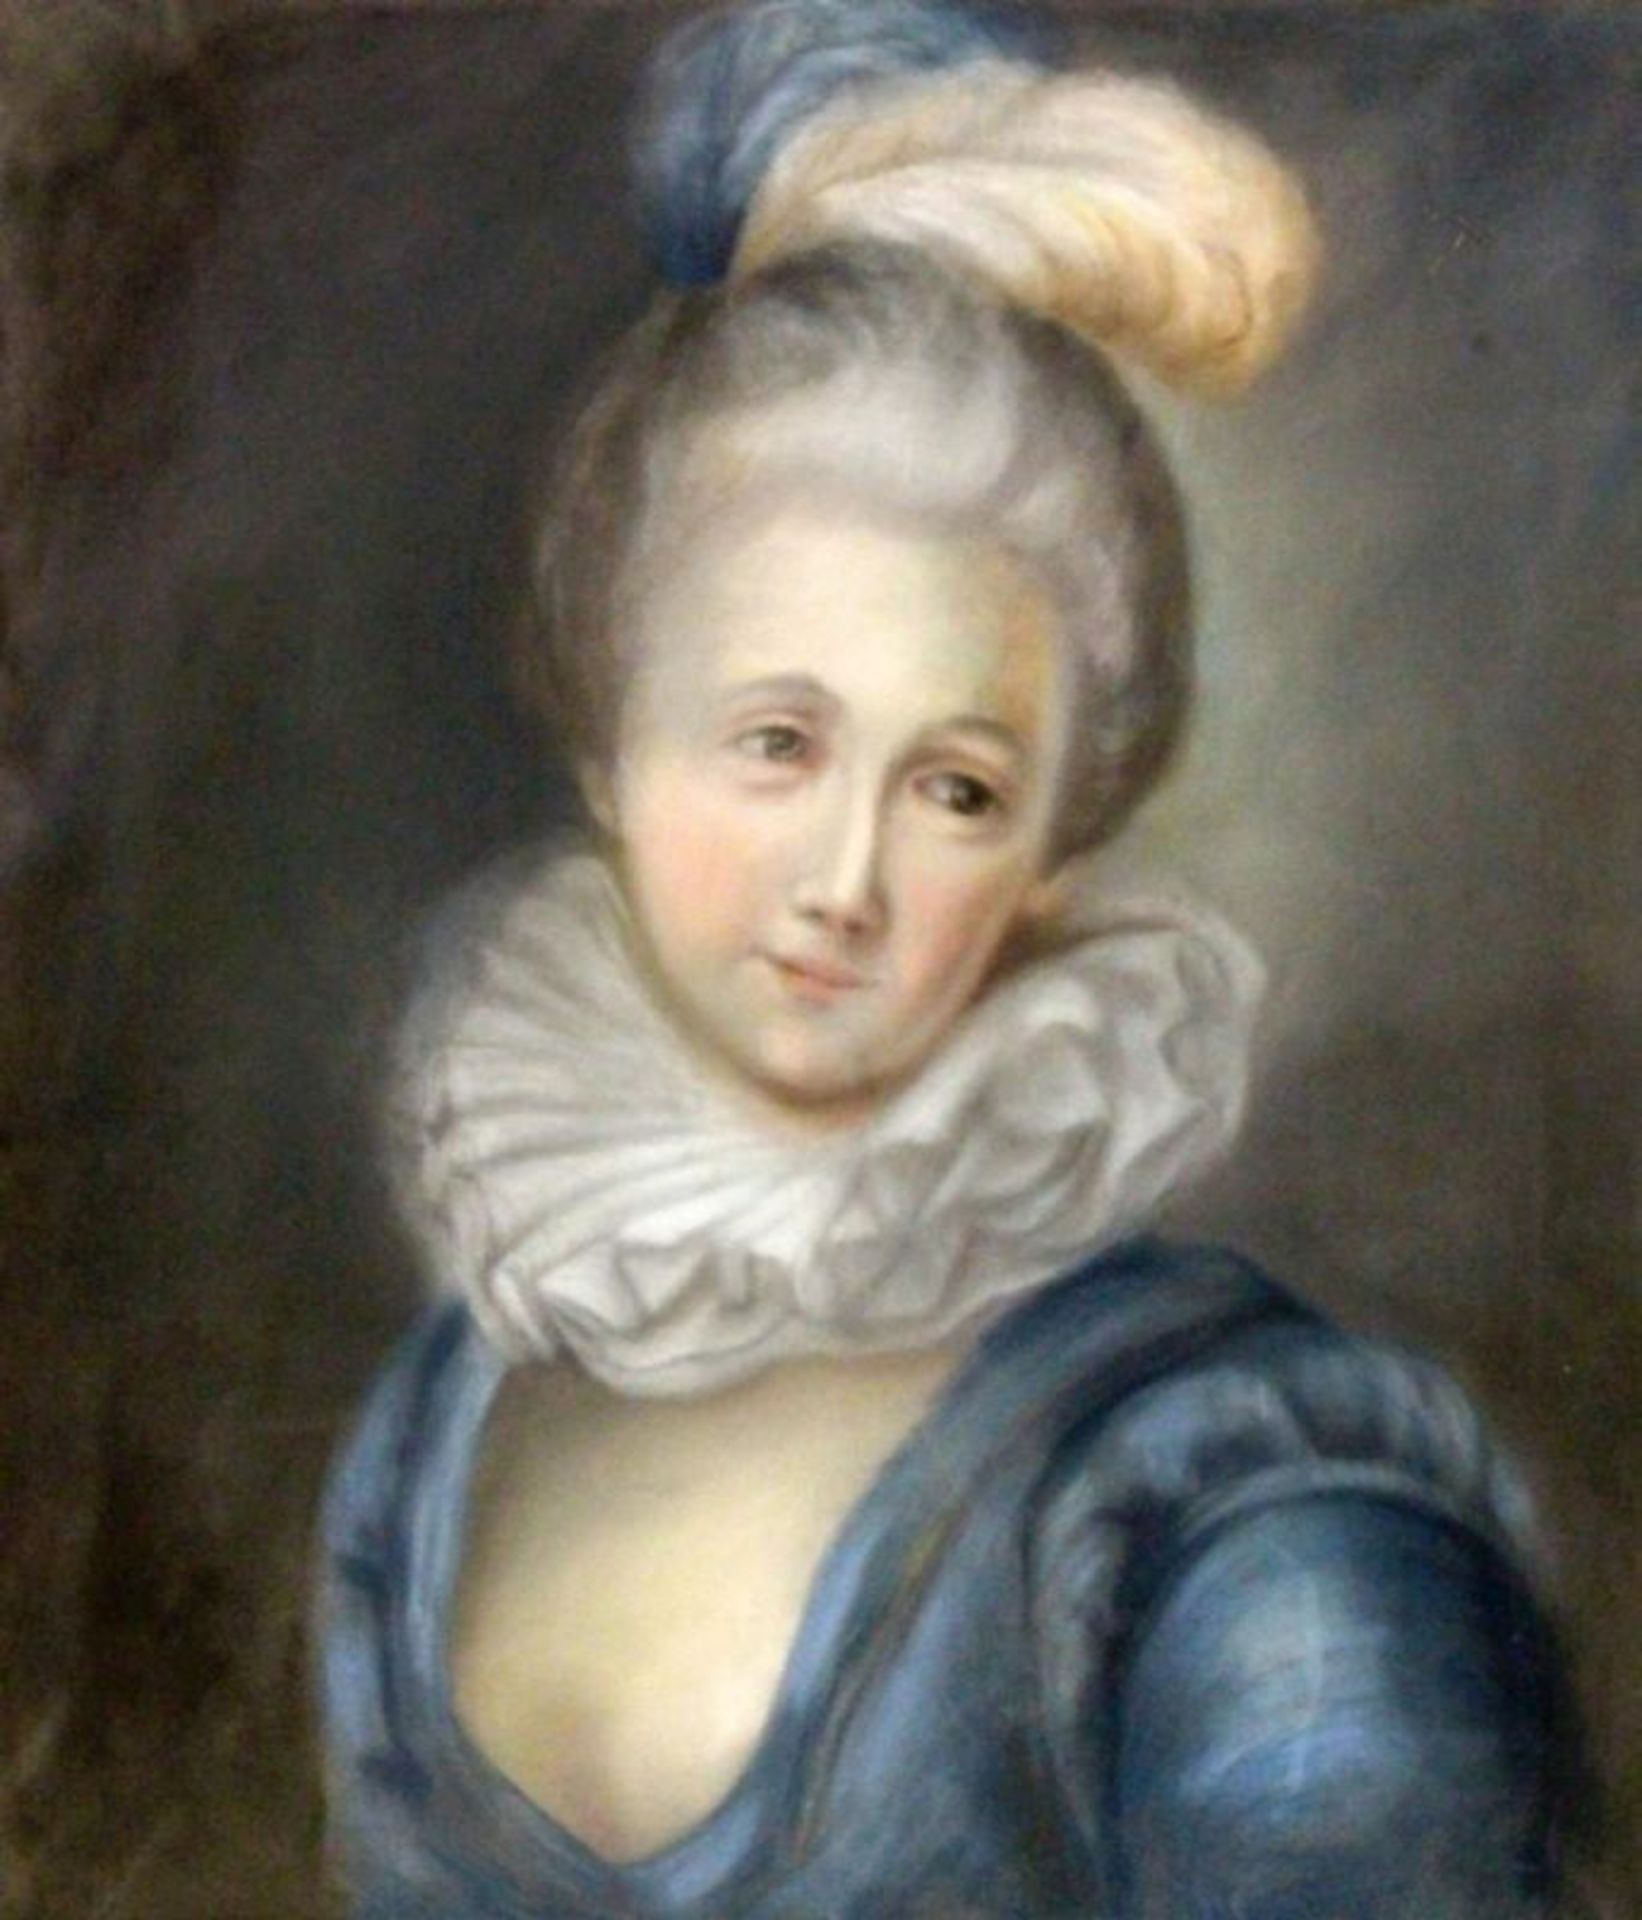 PORTRAITMALERFrankreich, 19.Jh. Bildnis einer adeligen Dame des Barock. Pastell, 63x55cmA PORTRAIT